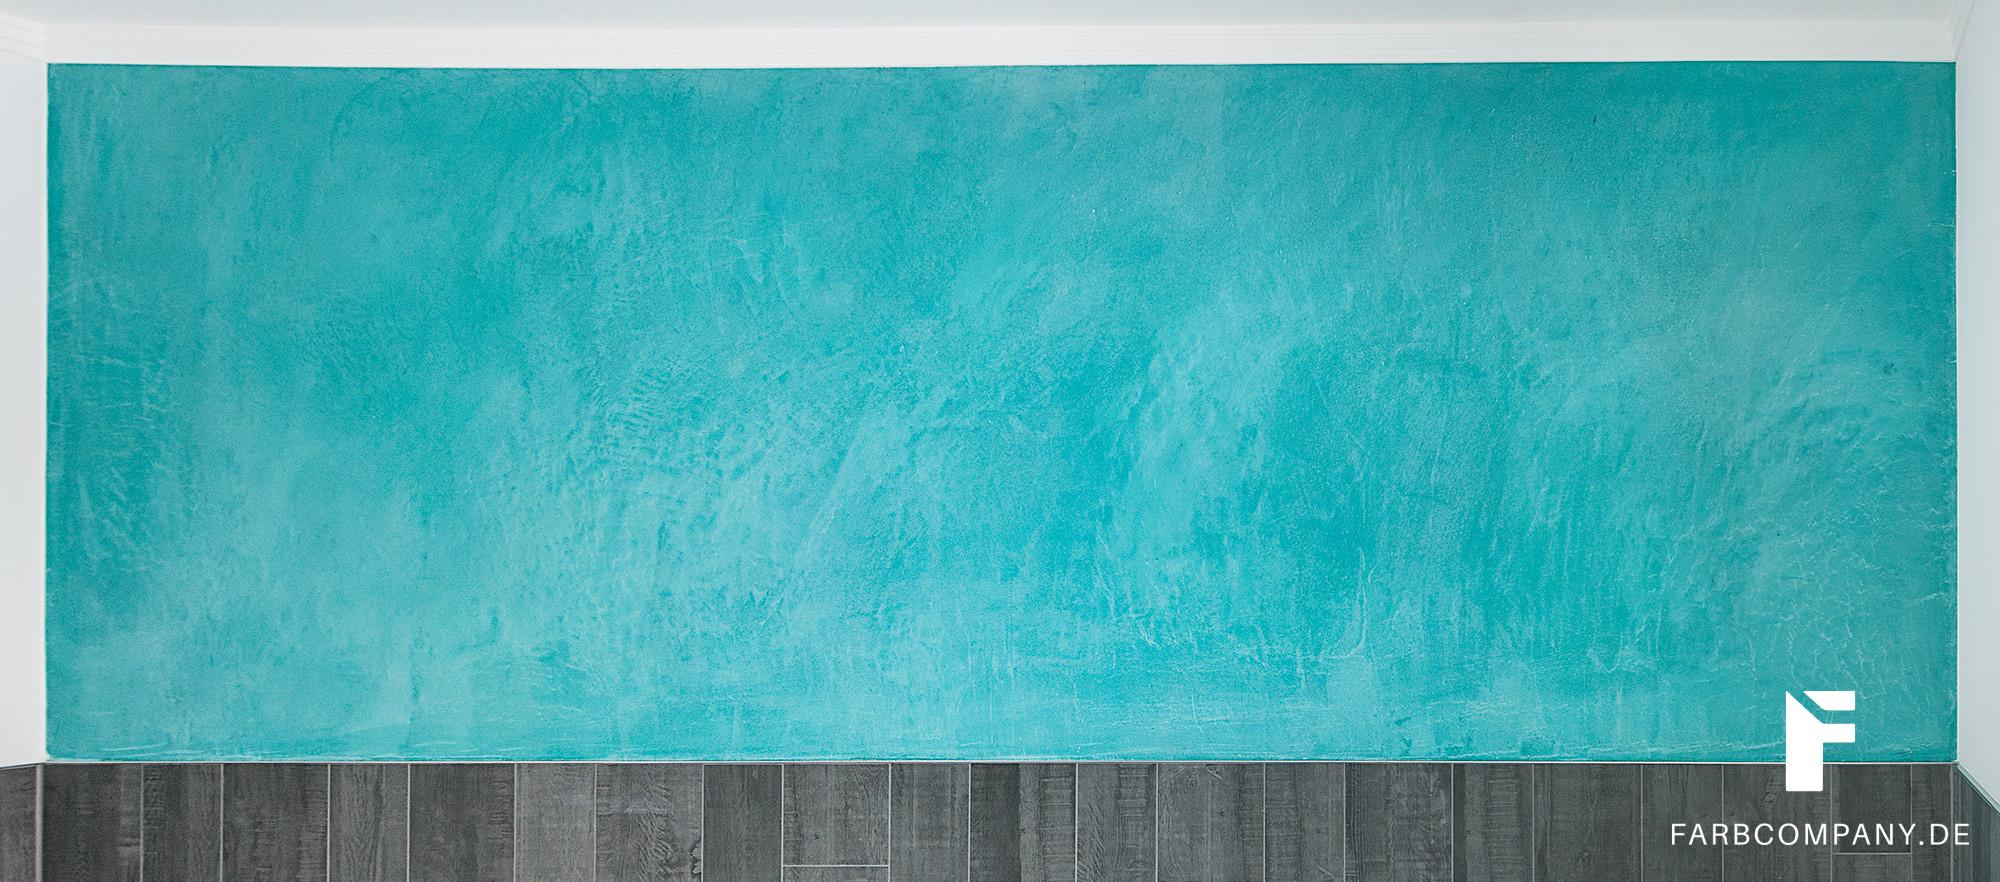 Exklusive Wandspachtelung/ Badezimmer Wandgestaltung mit Steinspachtel, fugenlos #spachteltechnik ©Farbcompany/ Mike Schleupner